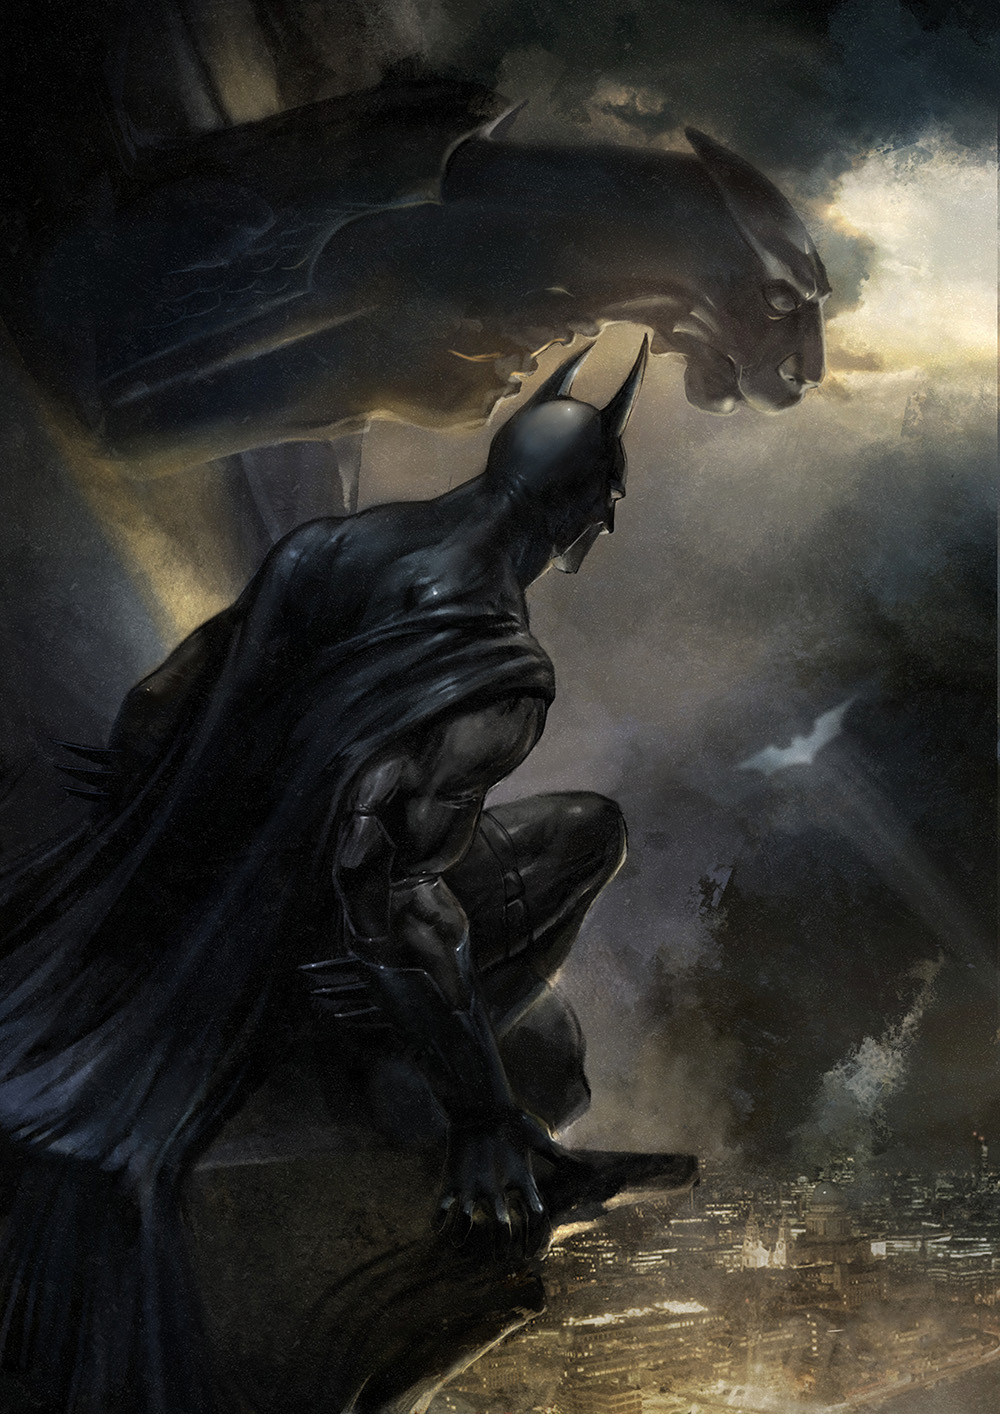 Batman artwork - view more DC Universe fan art